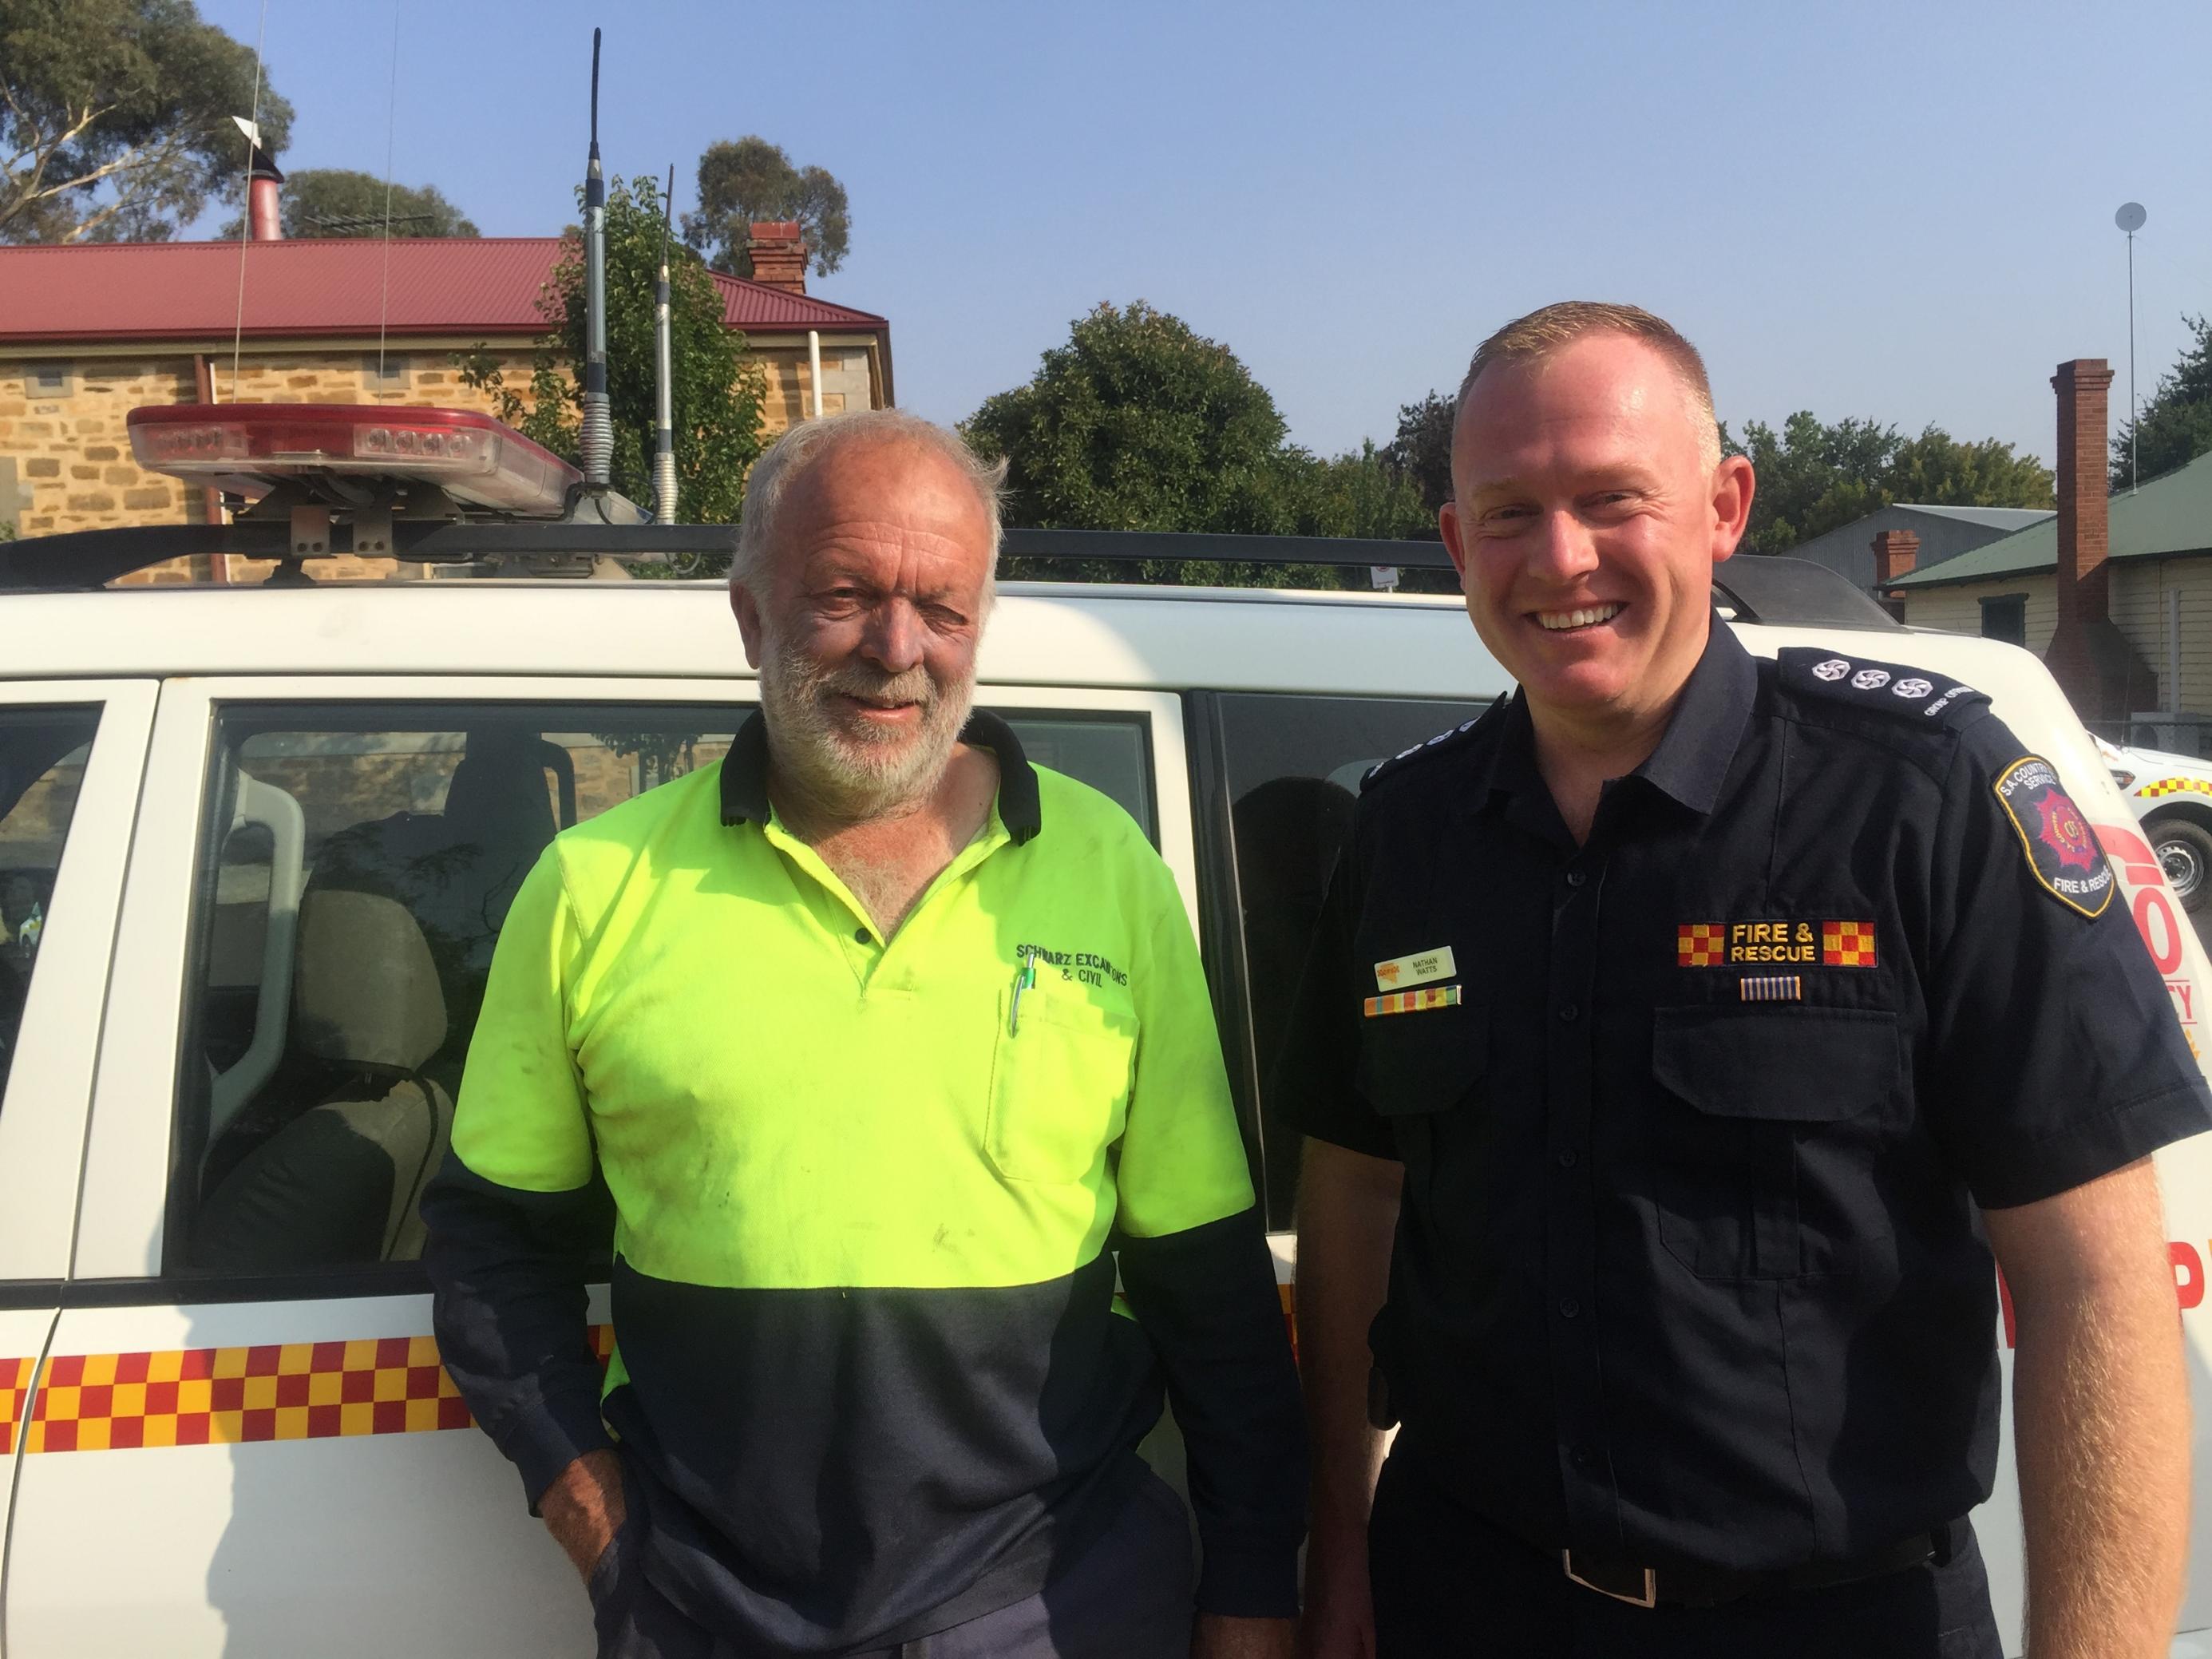 Das Foto zeigt zwei Feuerwehrmänner des Country Fire Service von Südaustralien